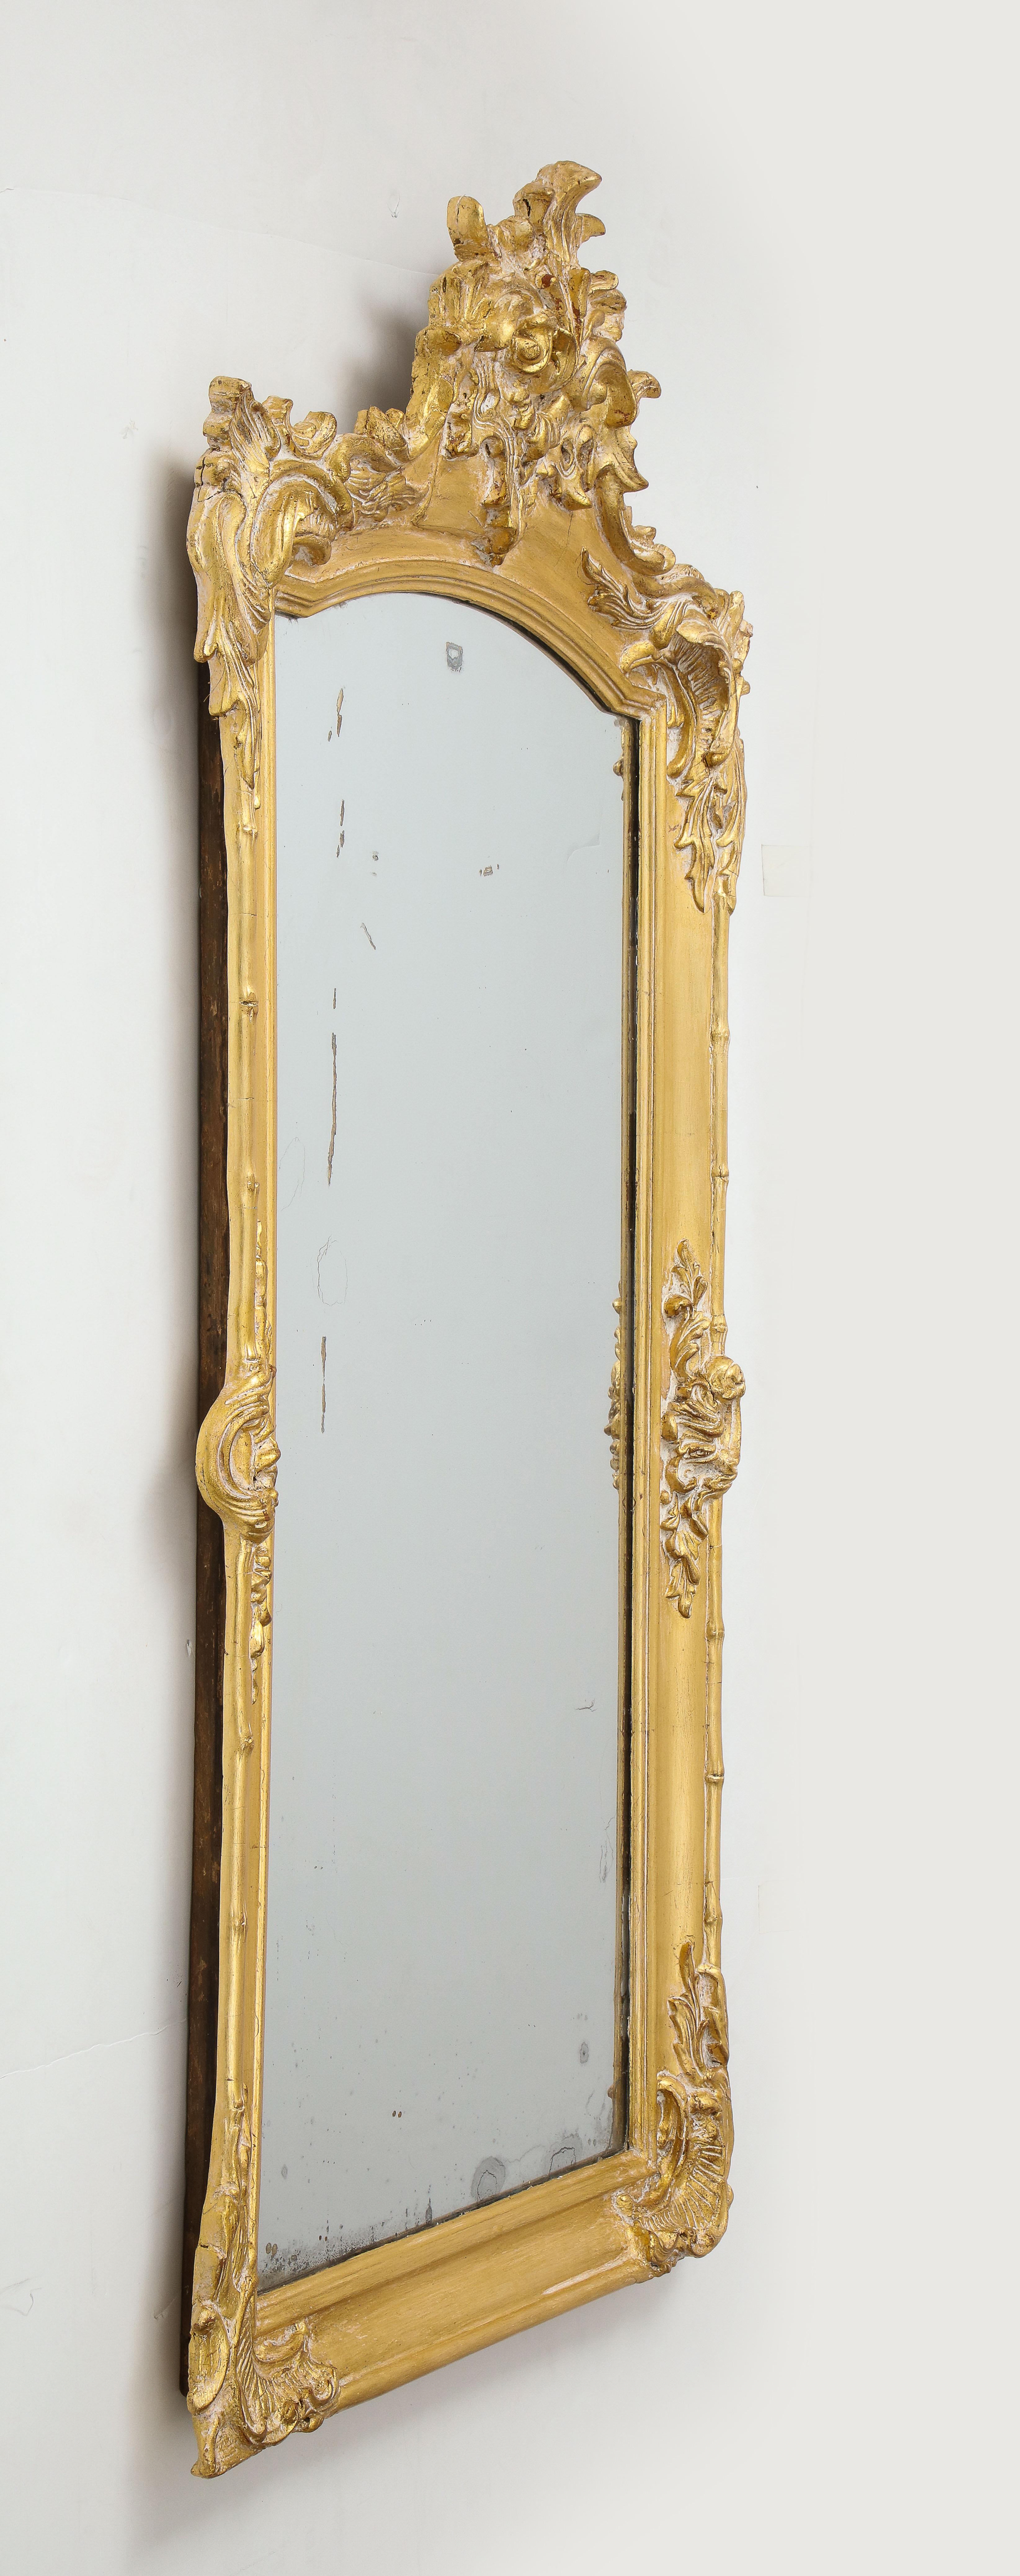 Fantasievoller französischer geschnitzter und vergoldeter Spiegel aus dem 19. Jahrhundert mit stilisiertem Bambus- und Blattmotiv. Original gealterter Quecksilberglas-Spiegeleinsatz.